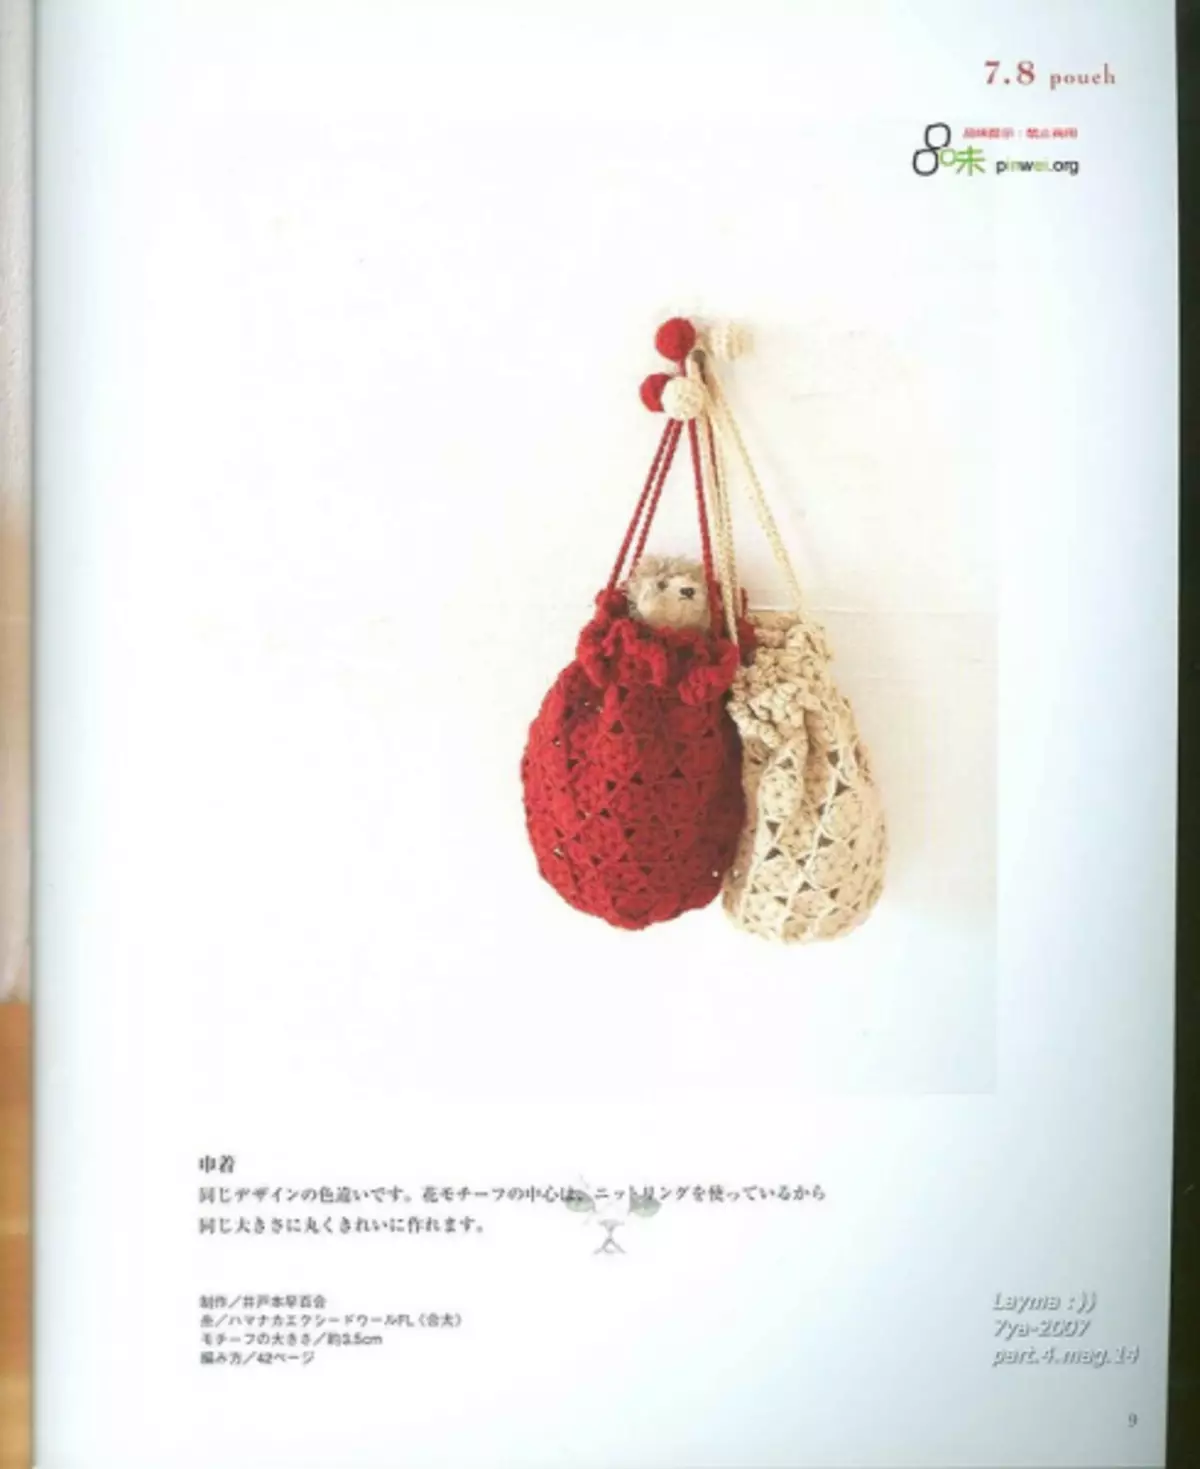 Hæklet. Japansk magasin